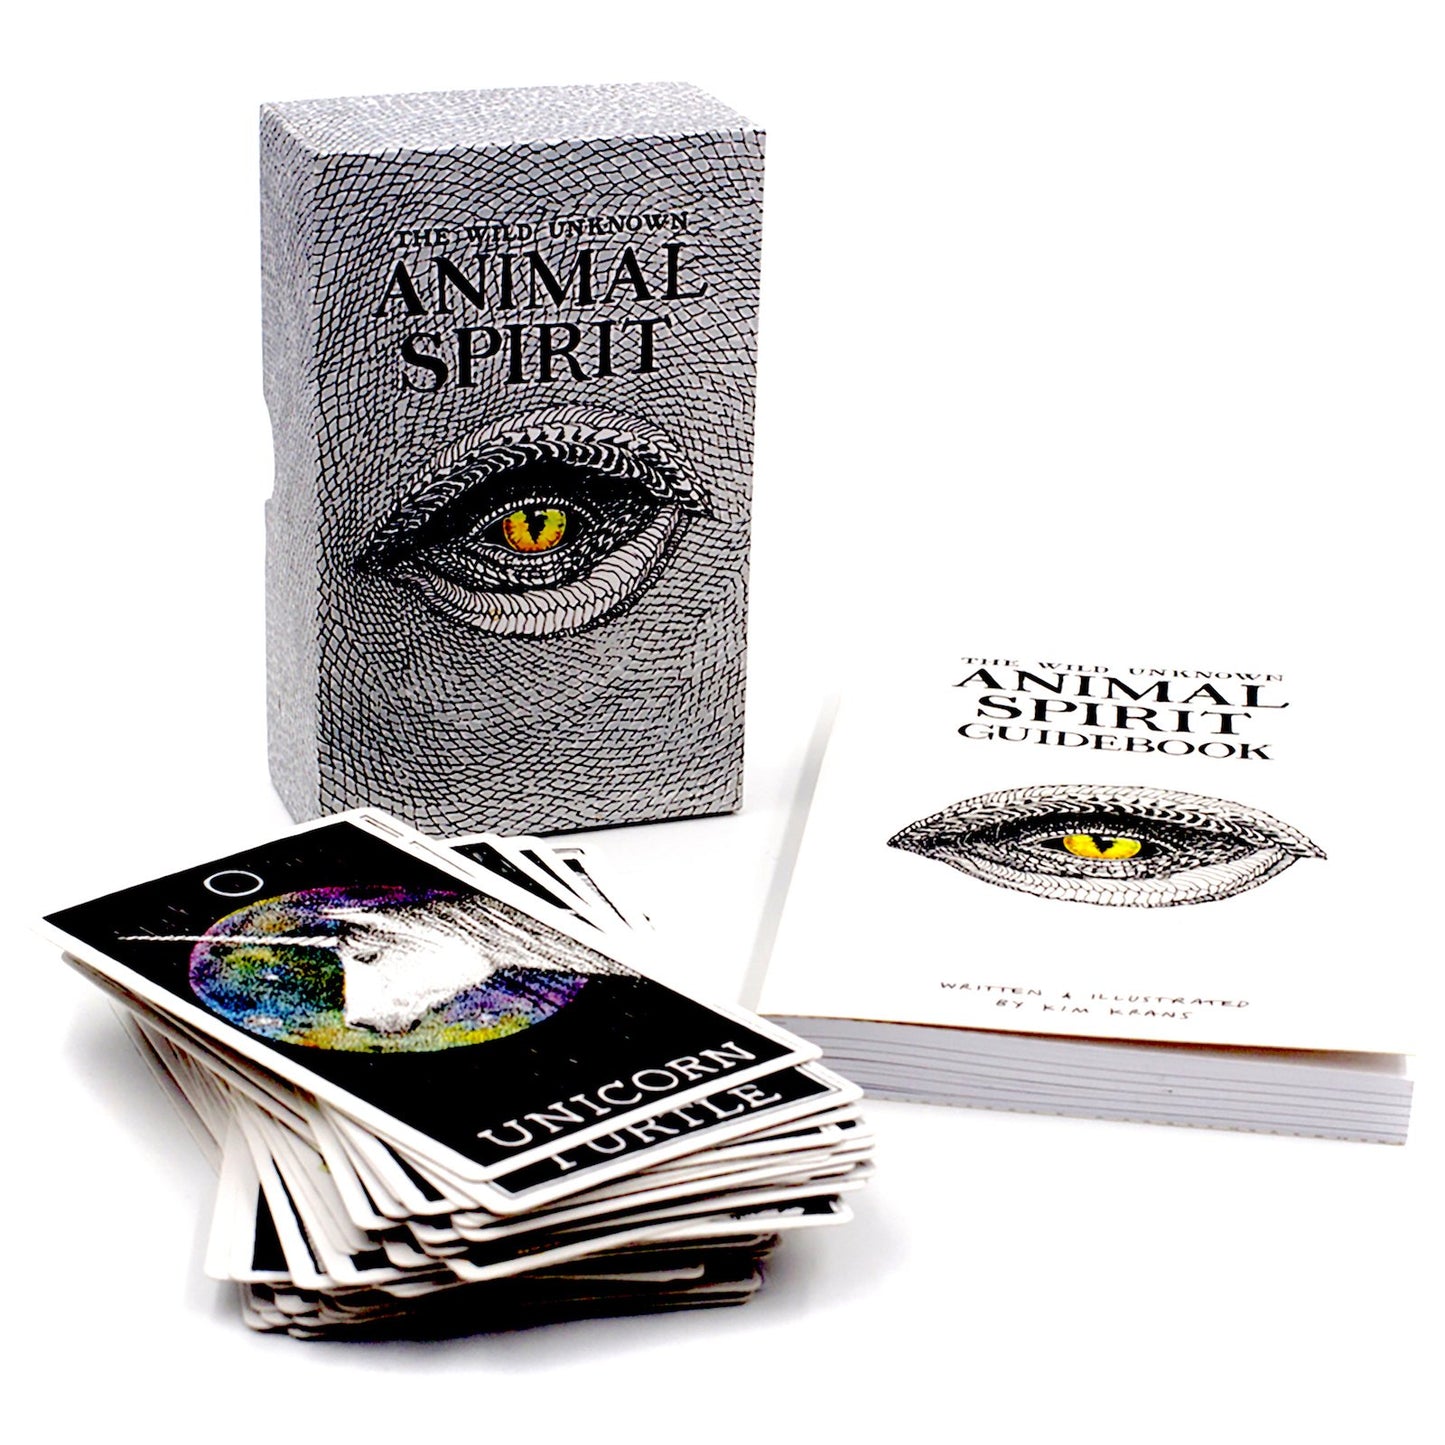 The Wild Unknown Animal Spirit Deck & Guidebook by Kim Krans